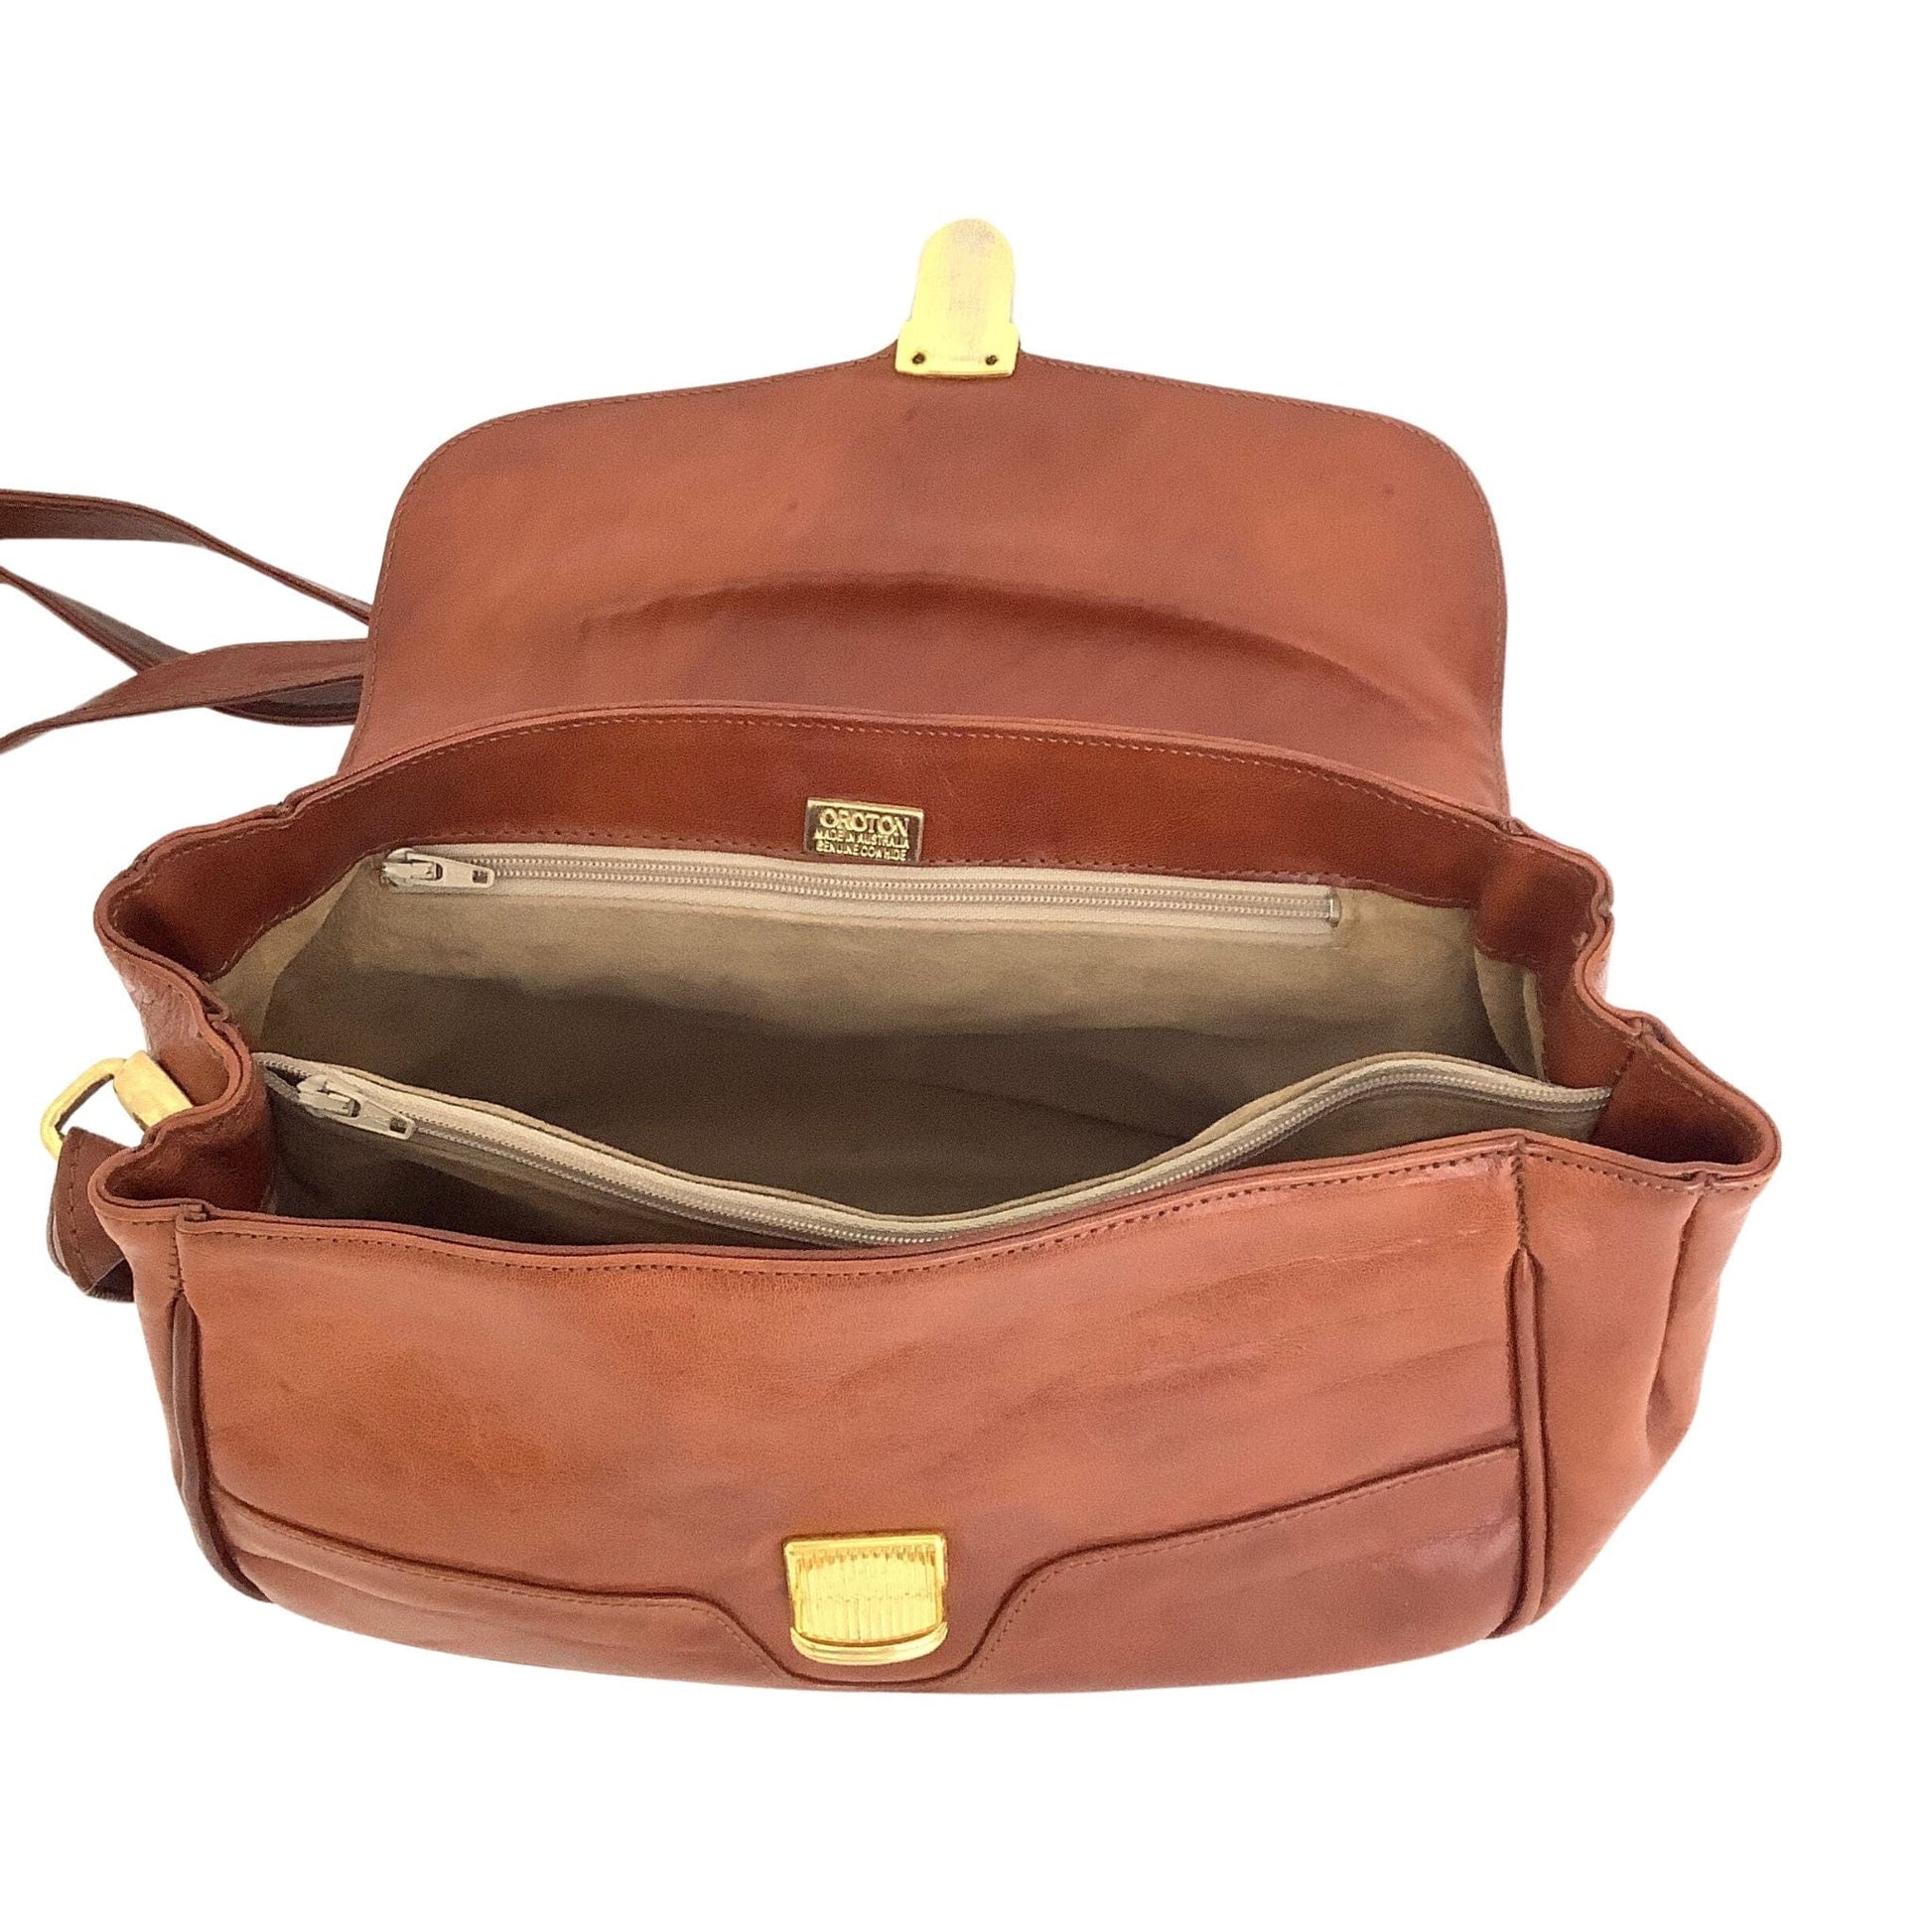 Oroton Australia Bag Brown / Leather / Vintage 1980s